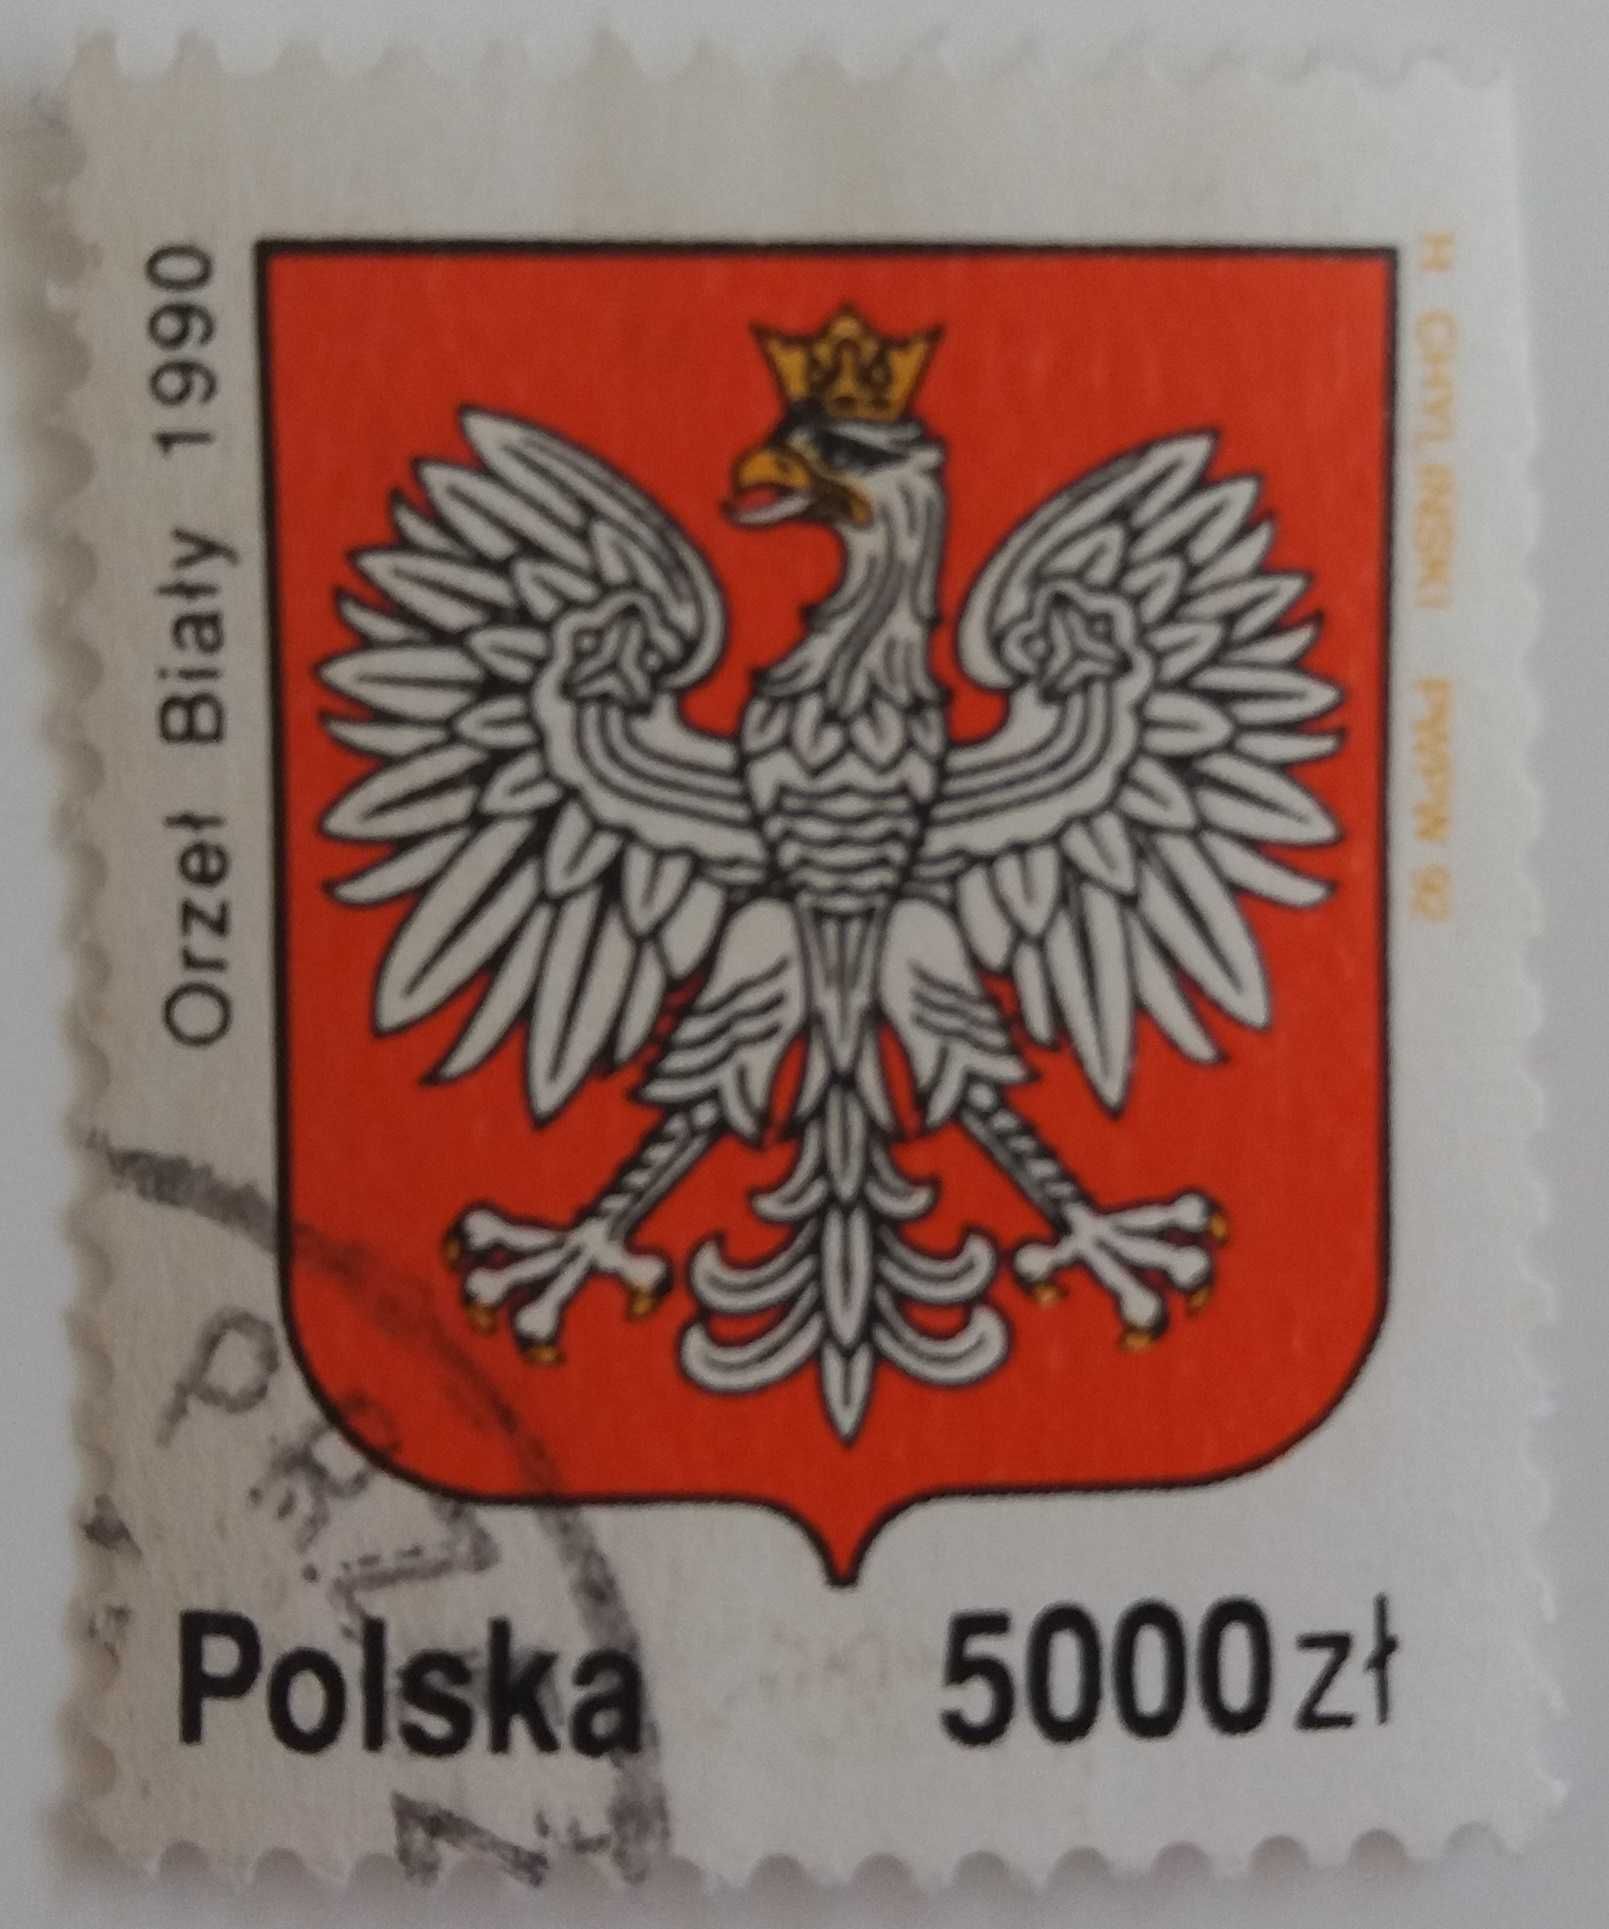 Znaczki pocztowe, Polska 1992, Historia Orła Białego